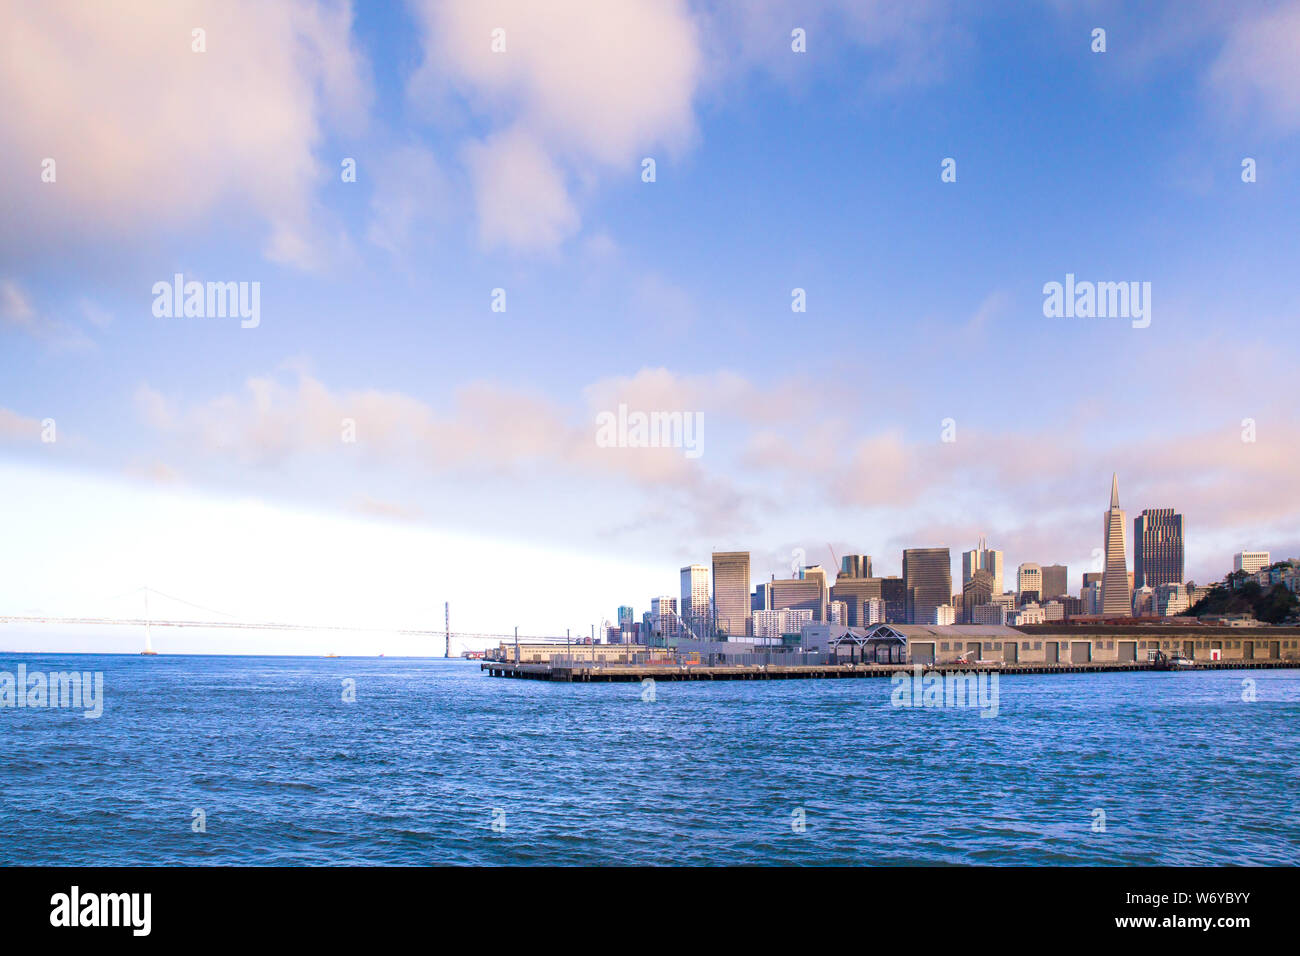 Ville de San Francisco Californie vu de la baie avec des bateaux, des docks, quai et bâtiments de skyline en vue. Banque D'Images